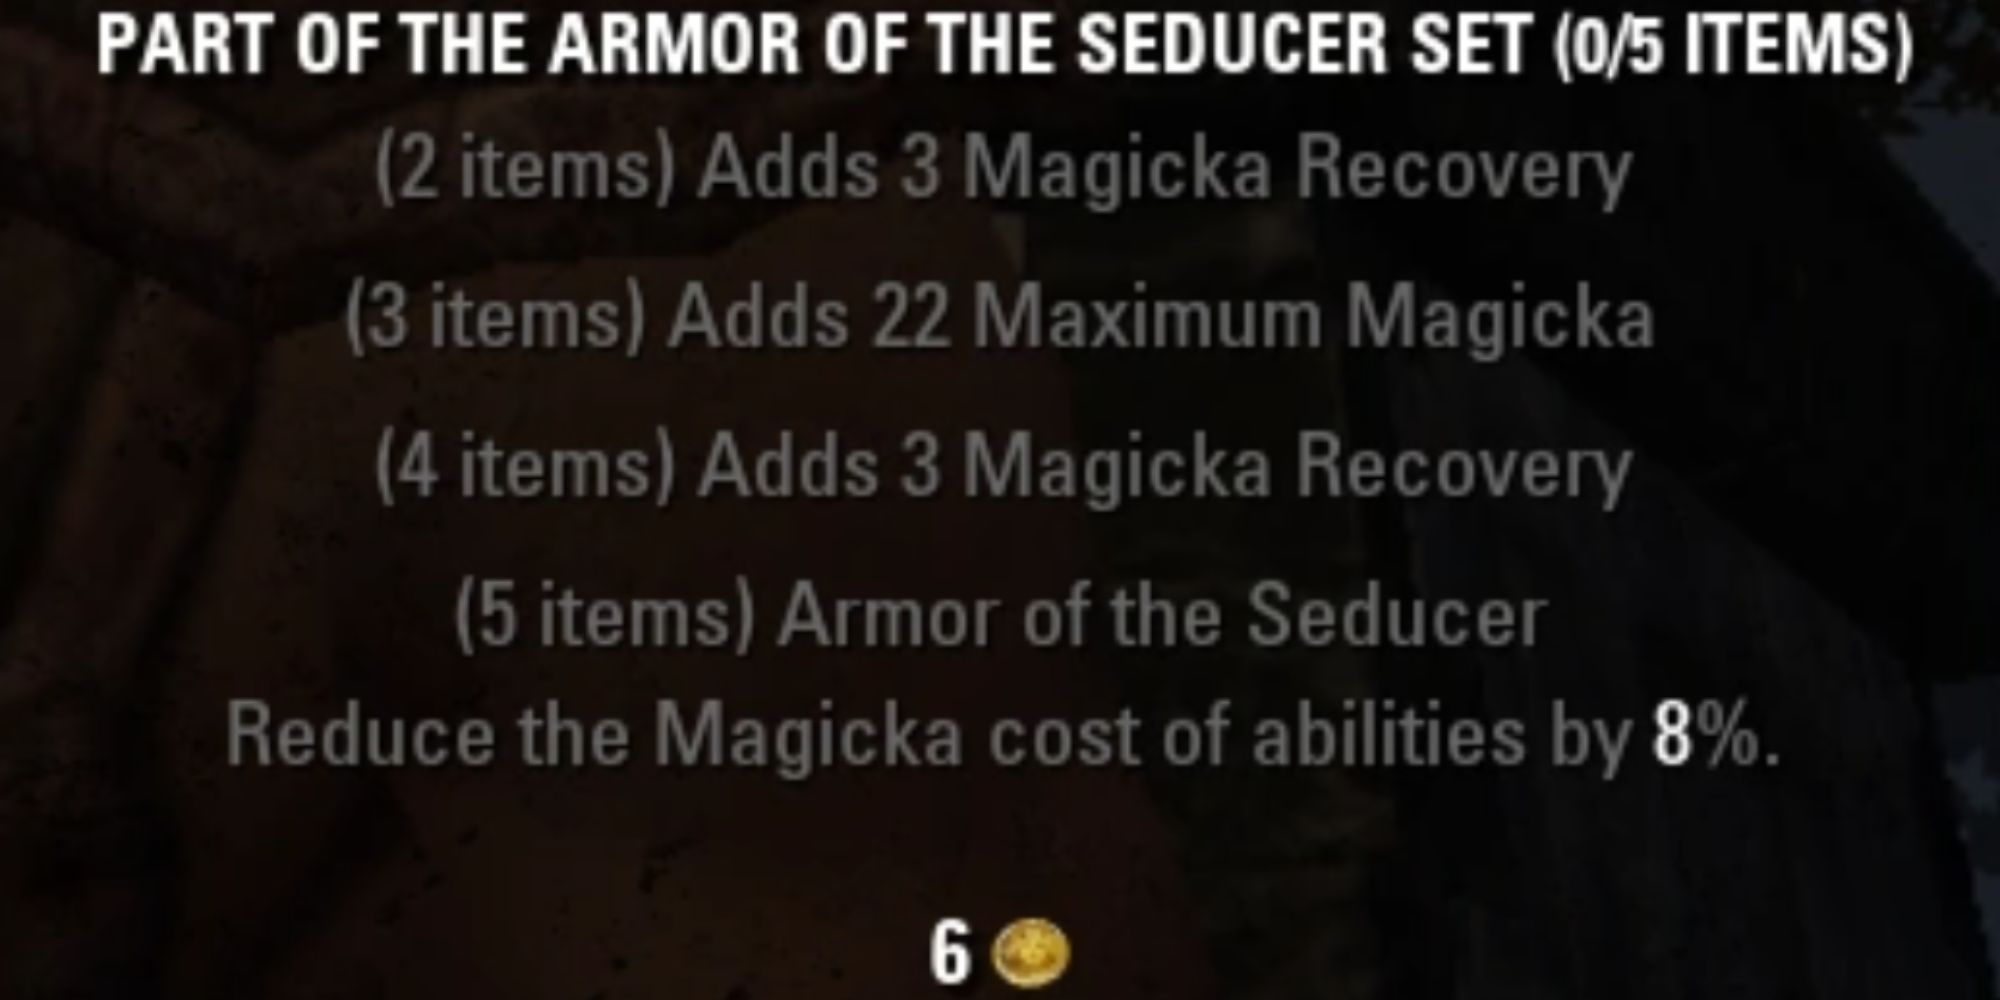 ESO Armor Of The Seducer Set Description